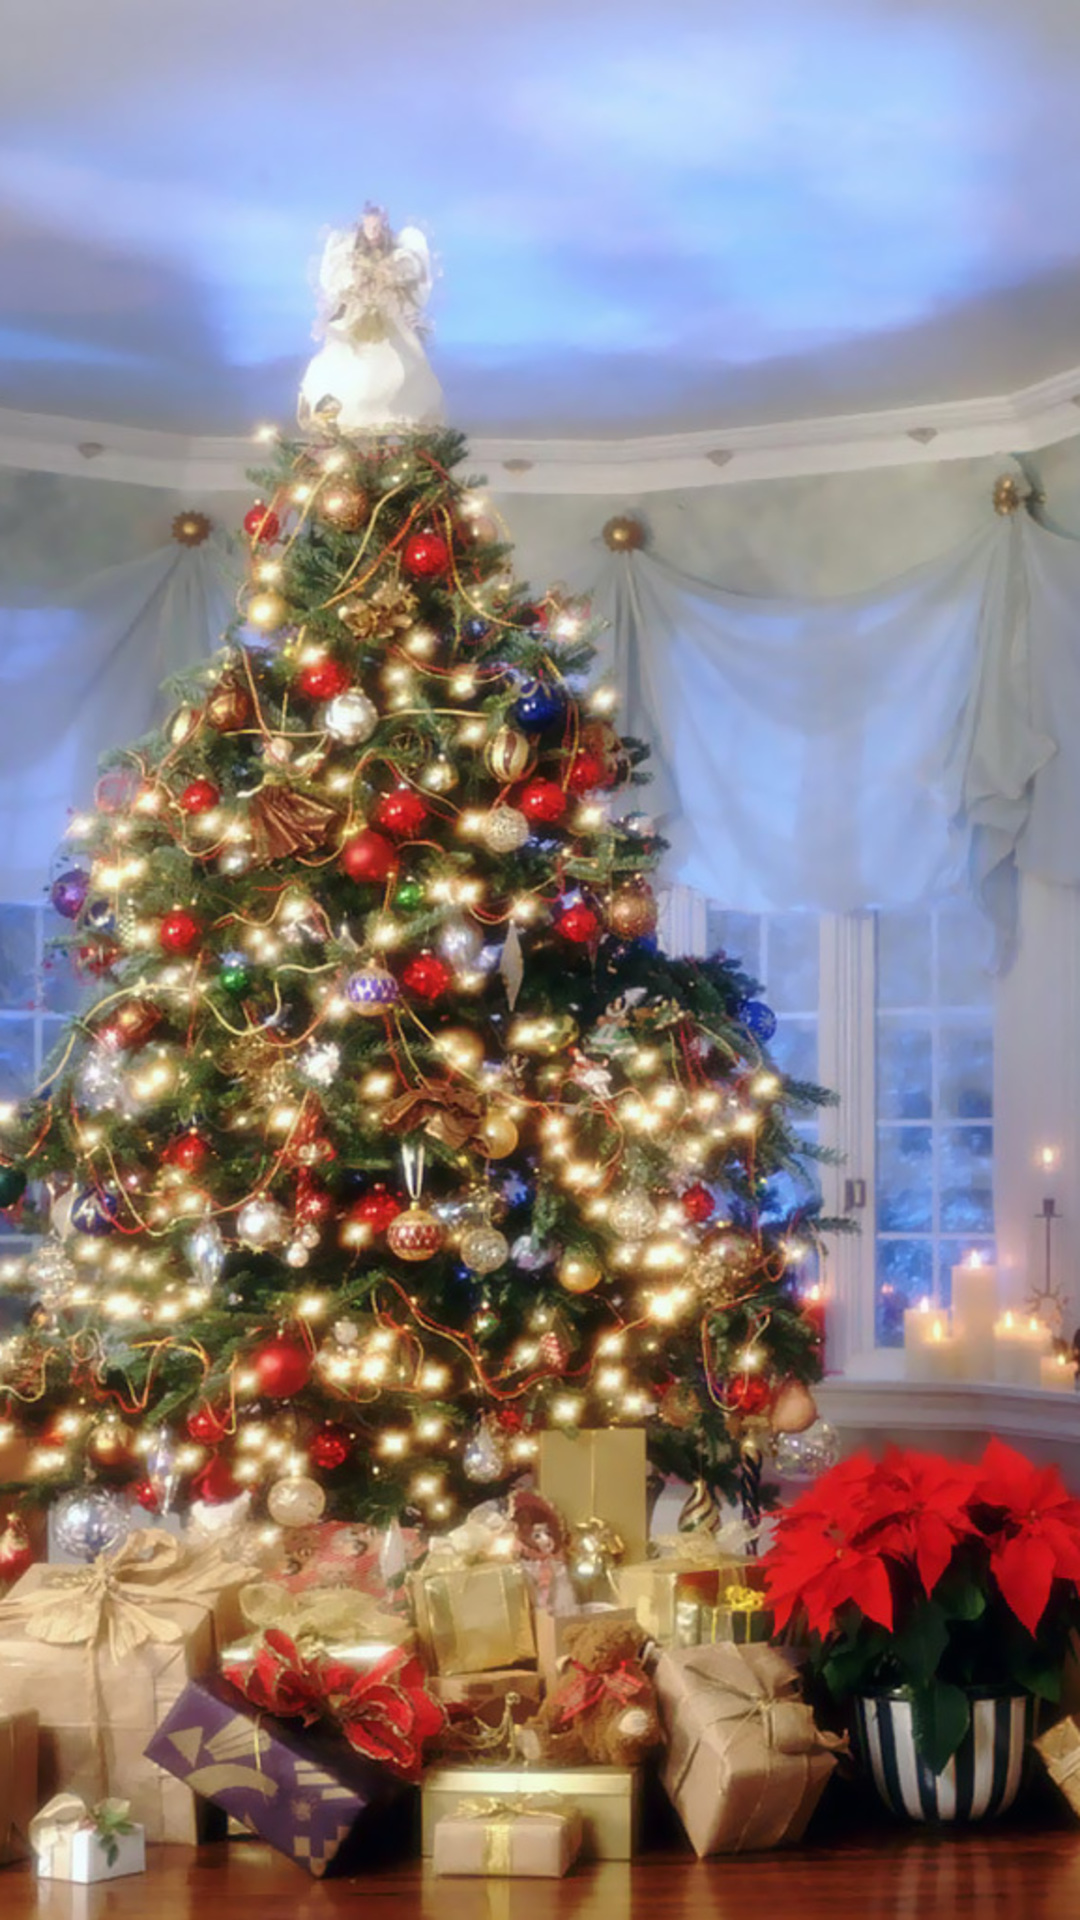 クリスマス壁紙hd iphone,クリスマスツリー,クリスマスの飾り,クリスマス,クリスマスオーナメント,木